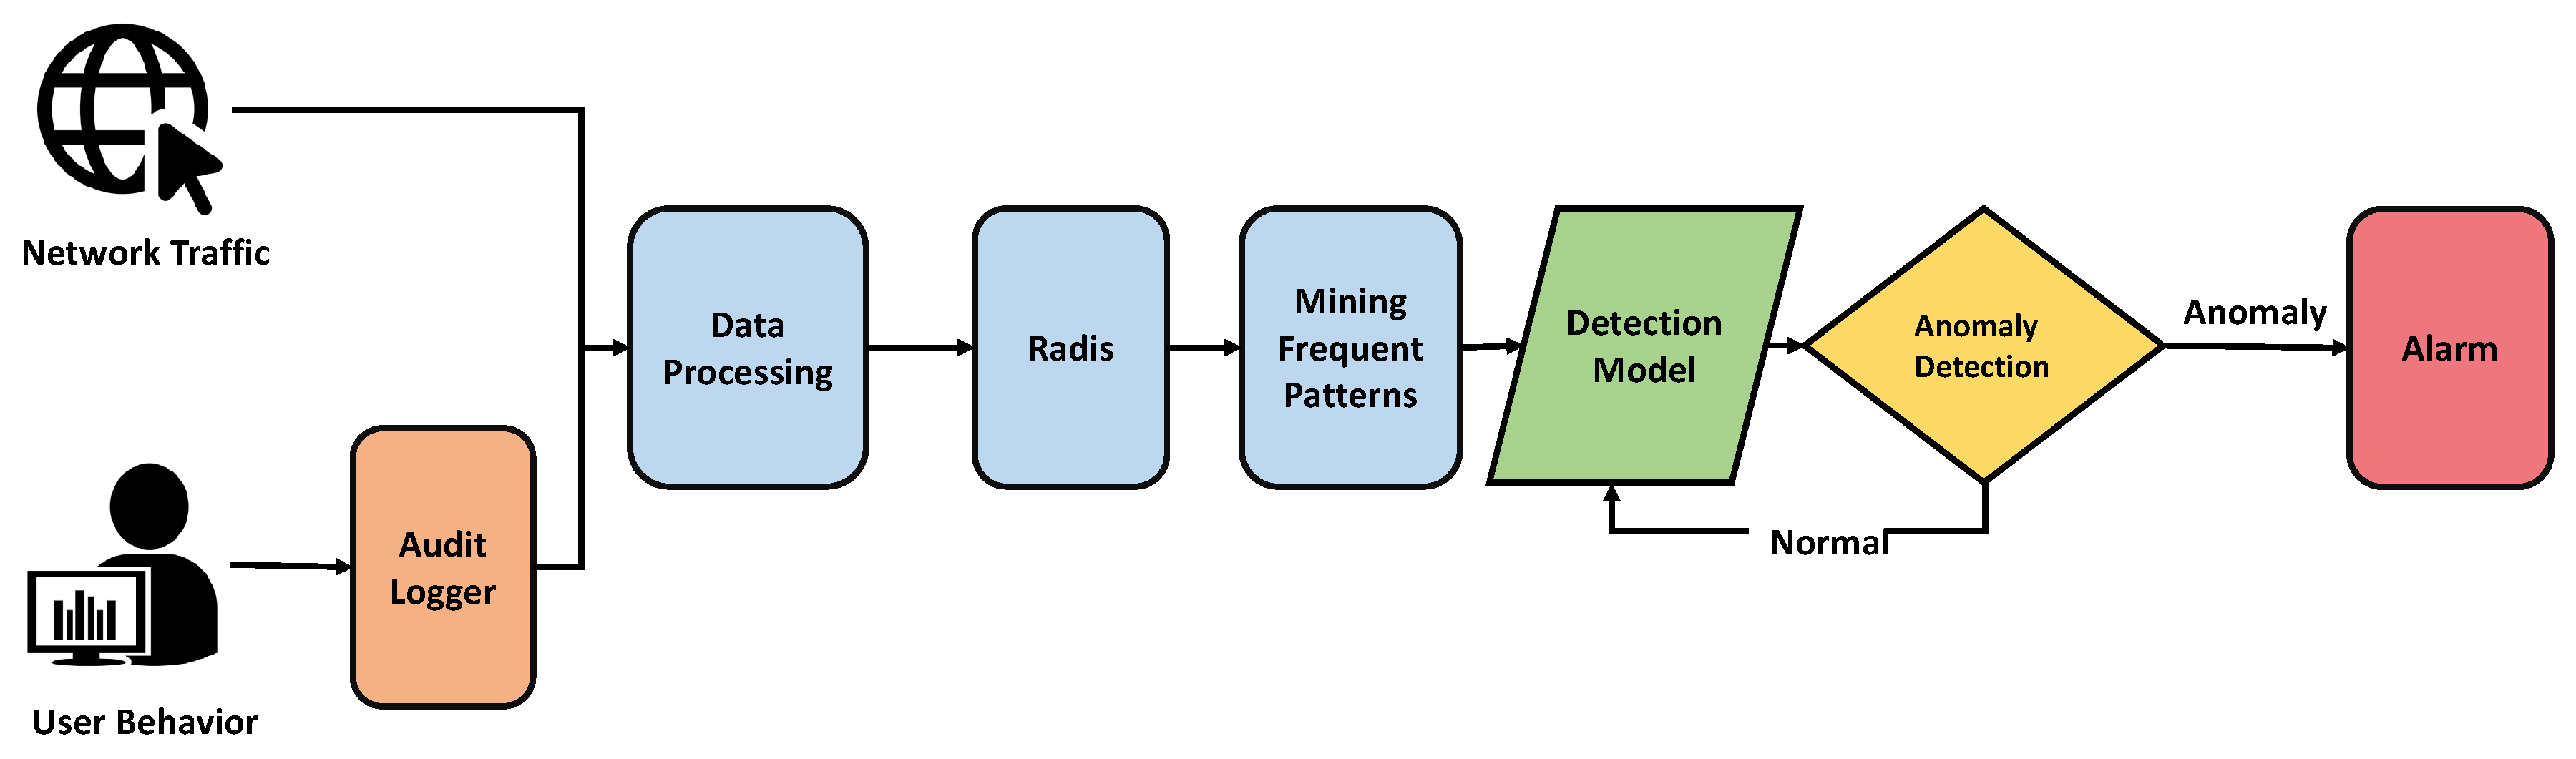 Detection models